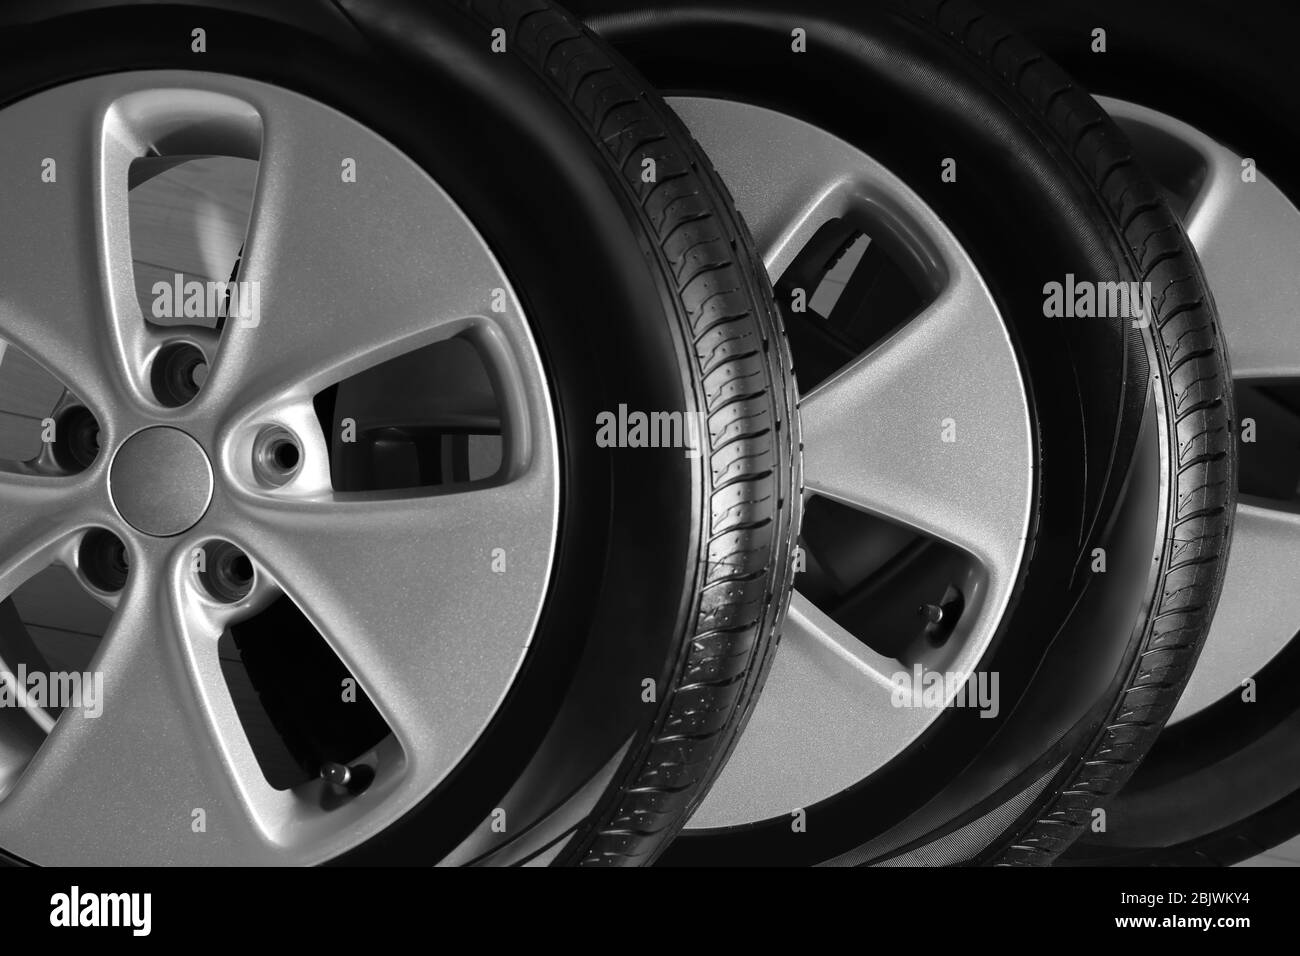 Car tires with rims, closeup Stock Photo